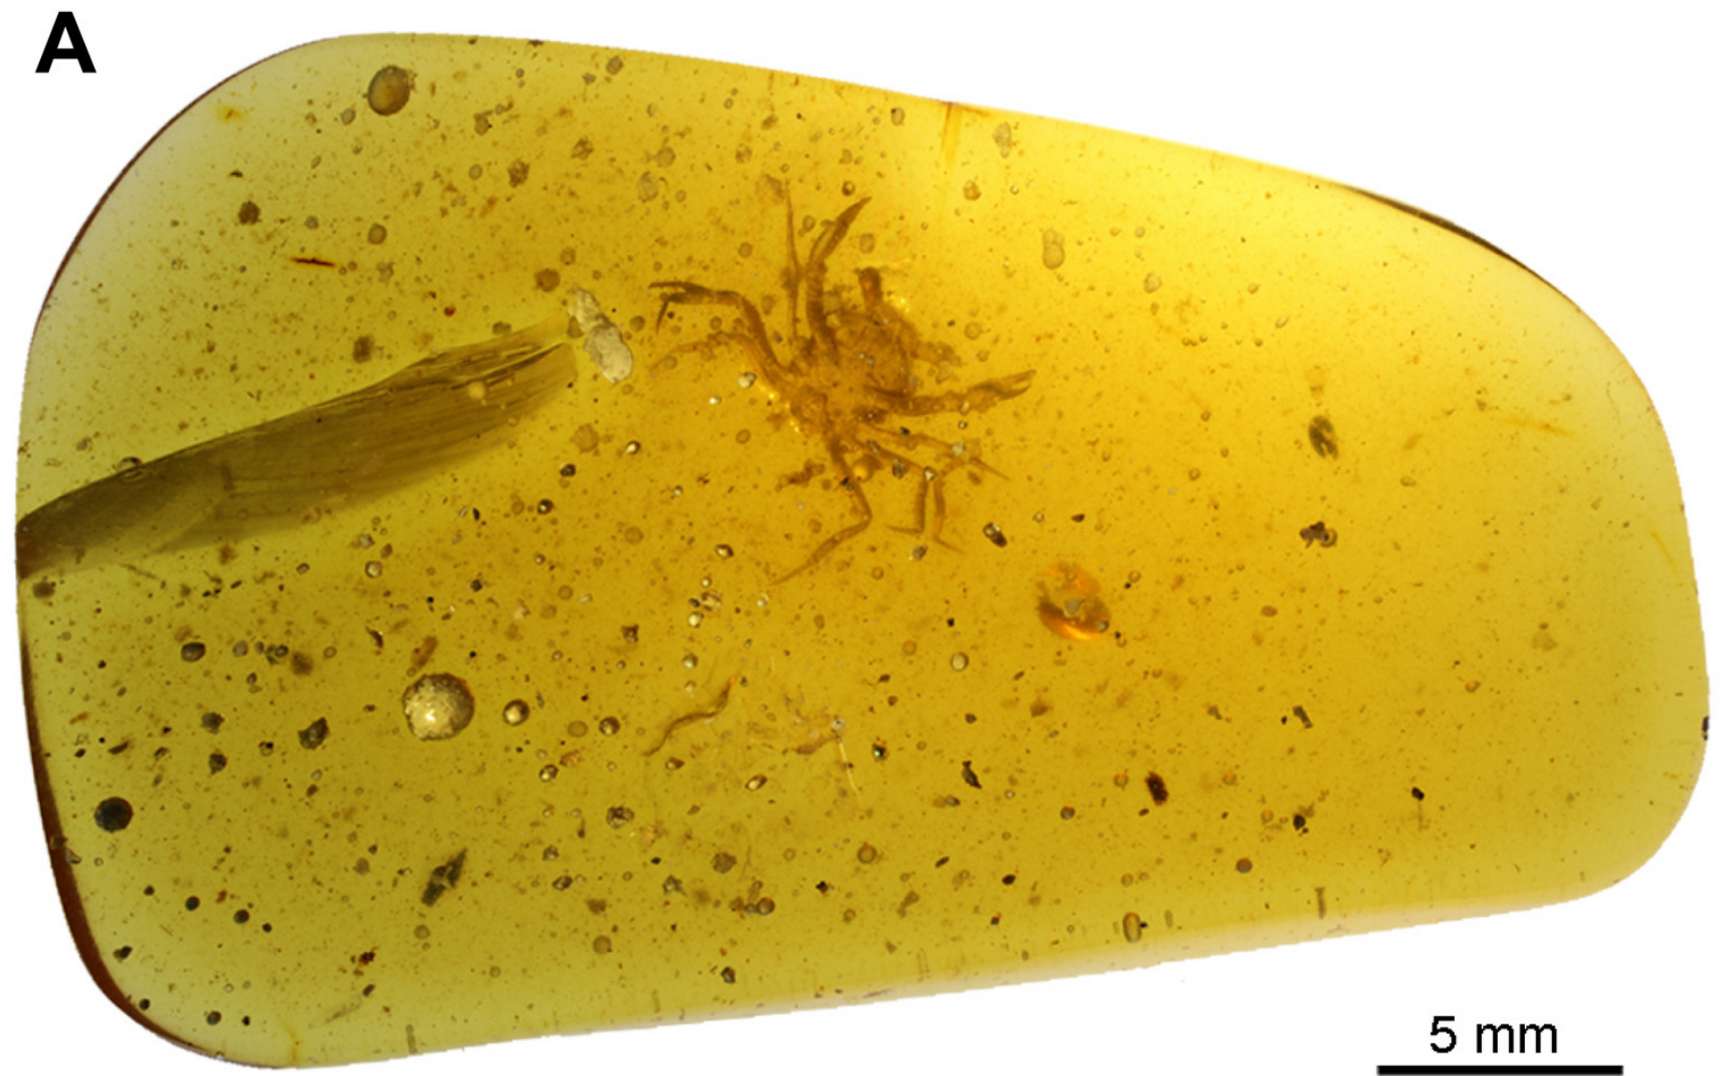 Découverte exceptionnelle d'un crabe de 100 millions d'années piégé dans de l'ambre